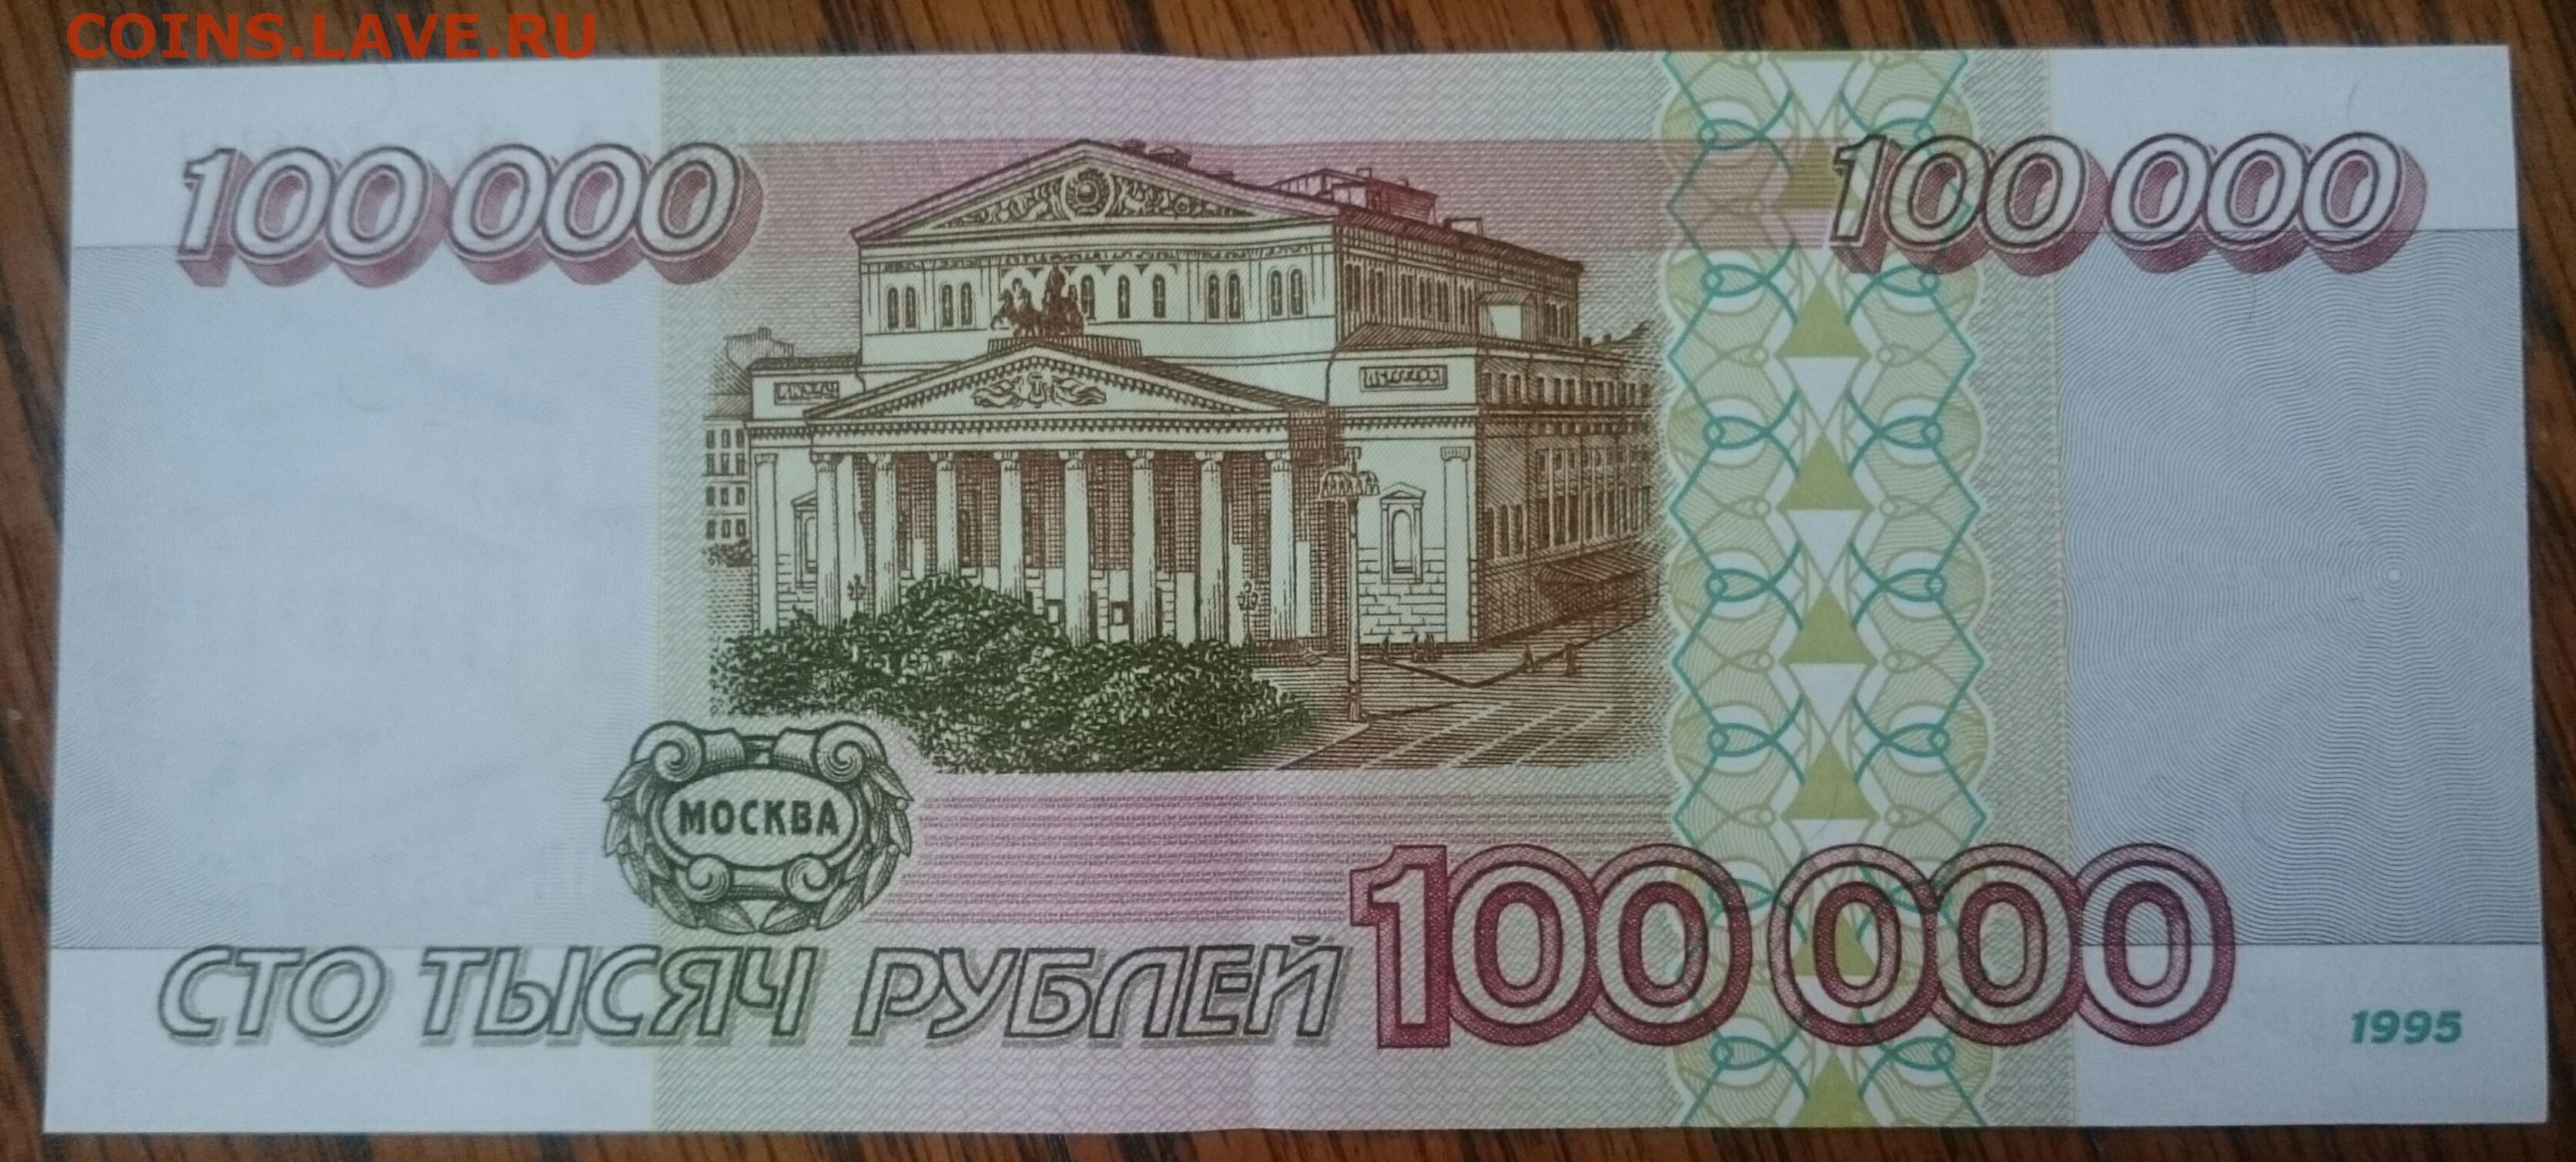 80 000 в рублях